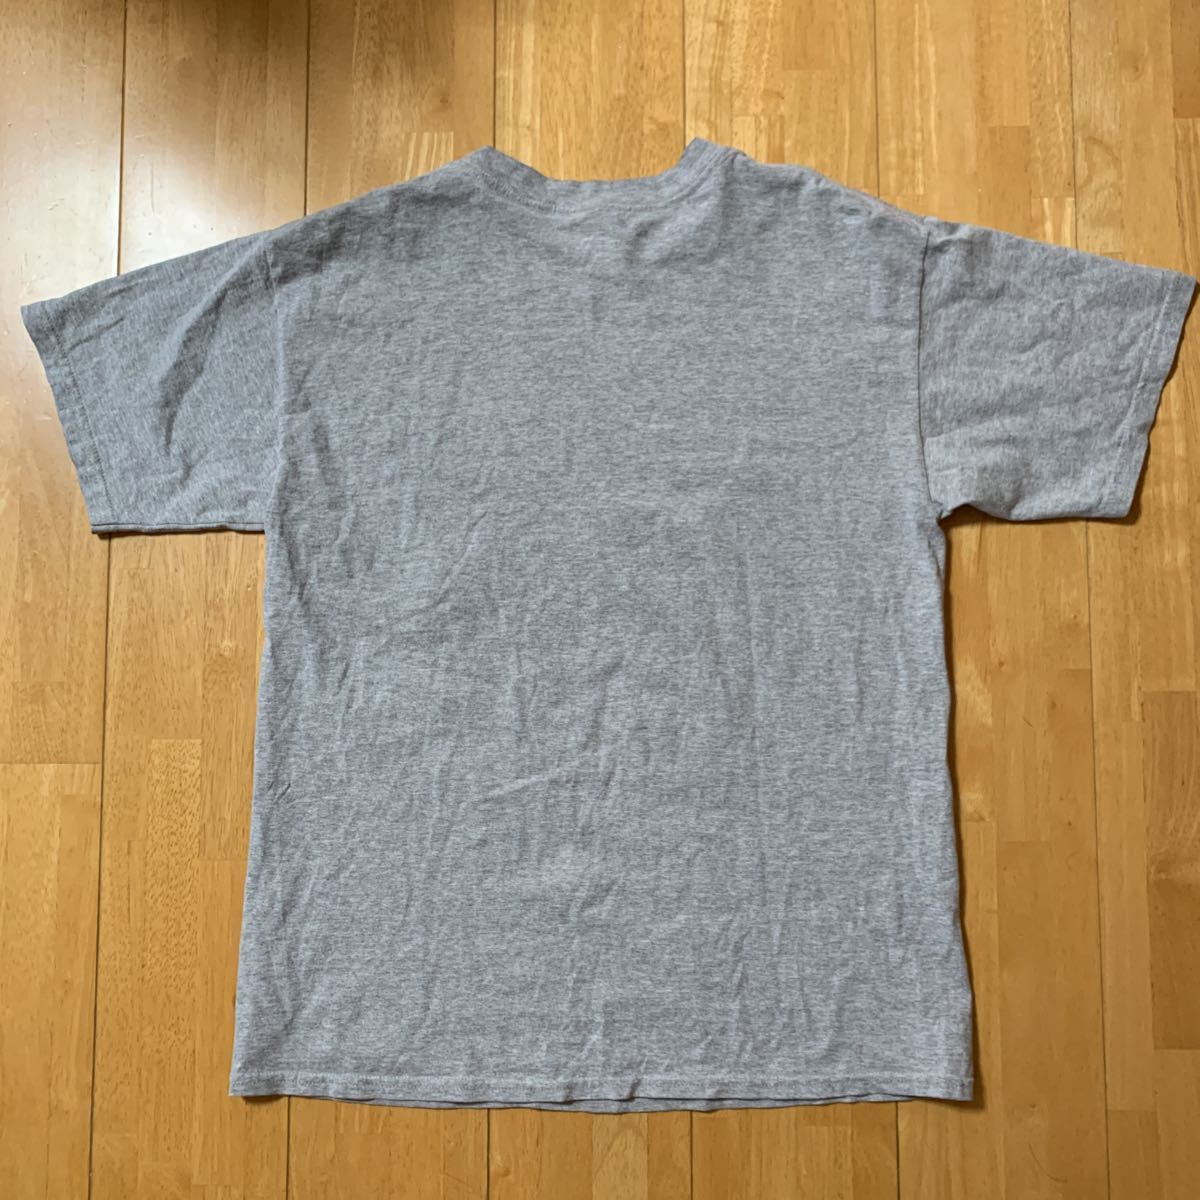 メーカー不明 Tシャツ メンズ トップス グレー MENS サイズ L 中古品 美品 1シーズン使用品 送料無料_画像2